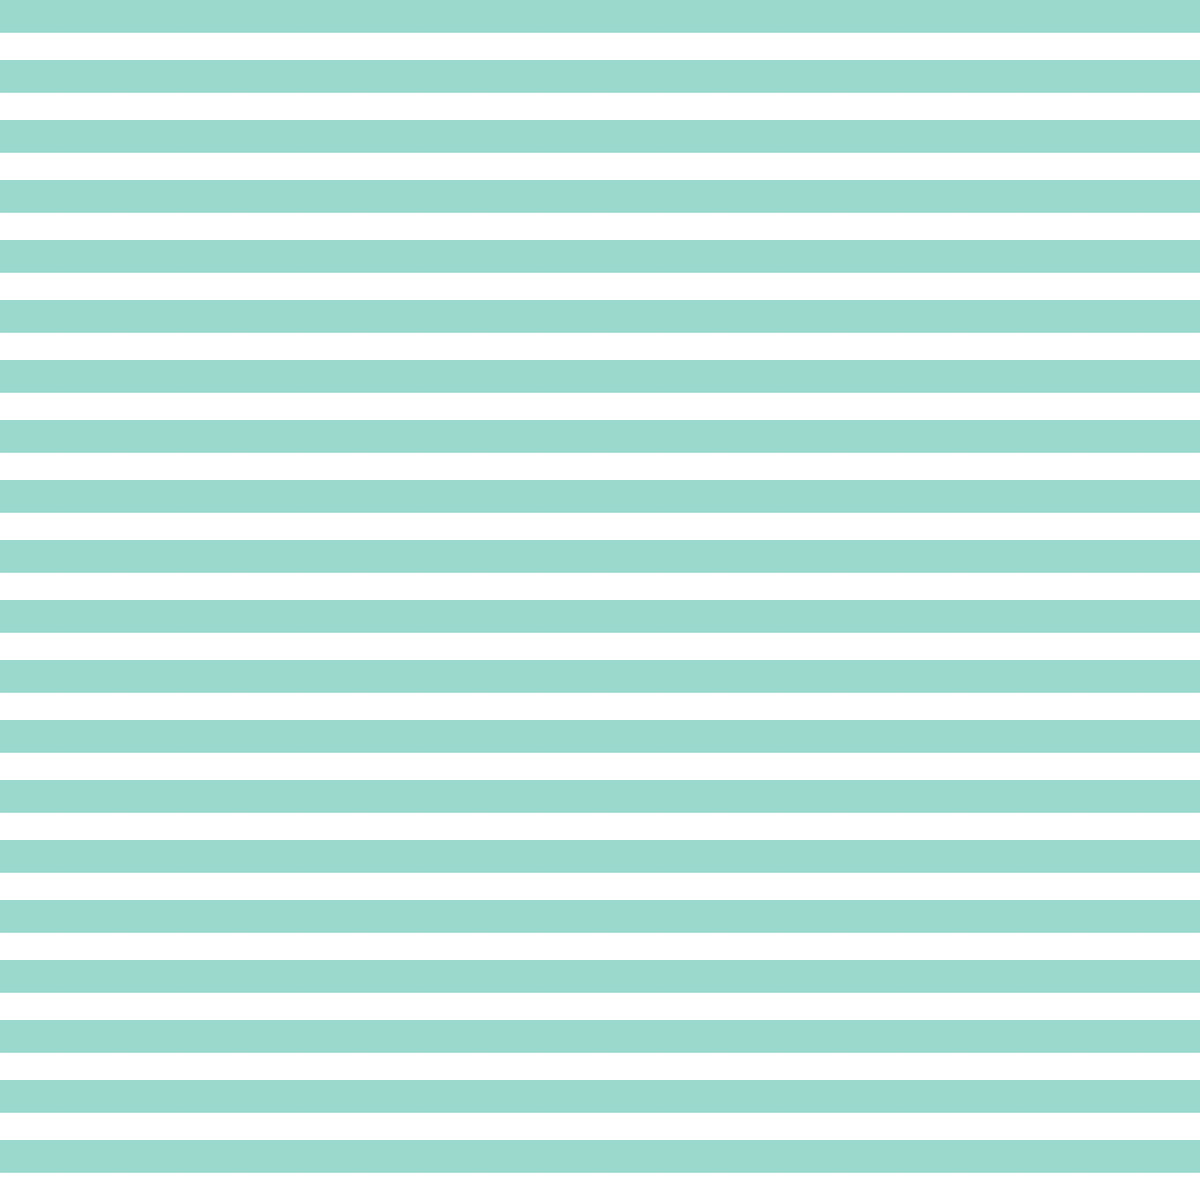 Free Digital Striped Scrapbooking Paper Turquoise Ausdruckbares Geschenkpapier Freebie